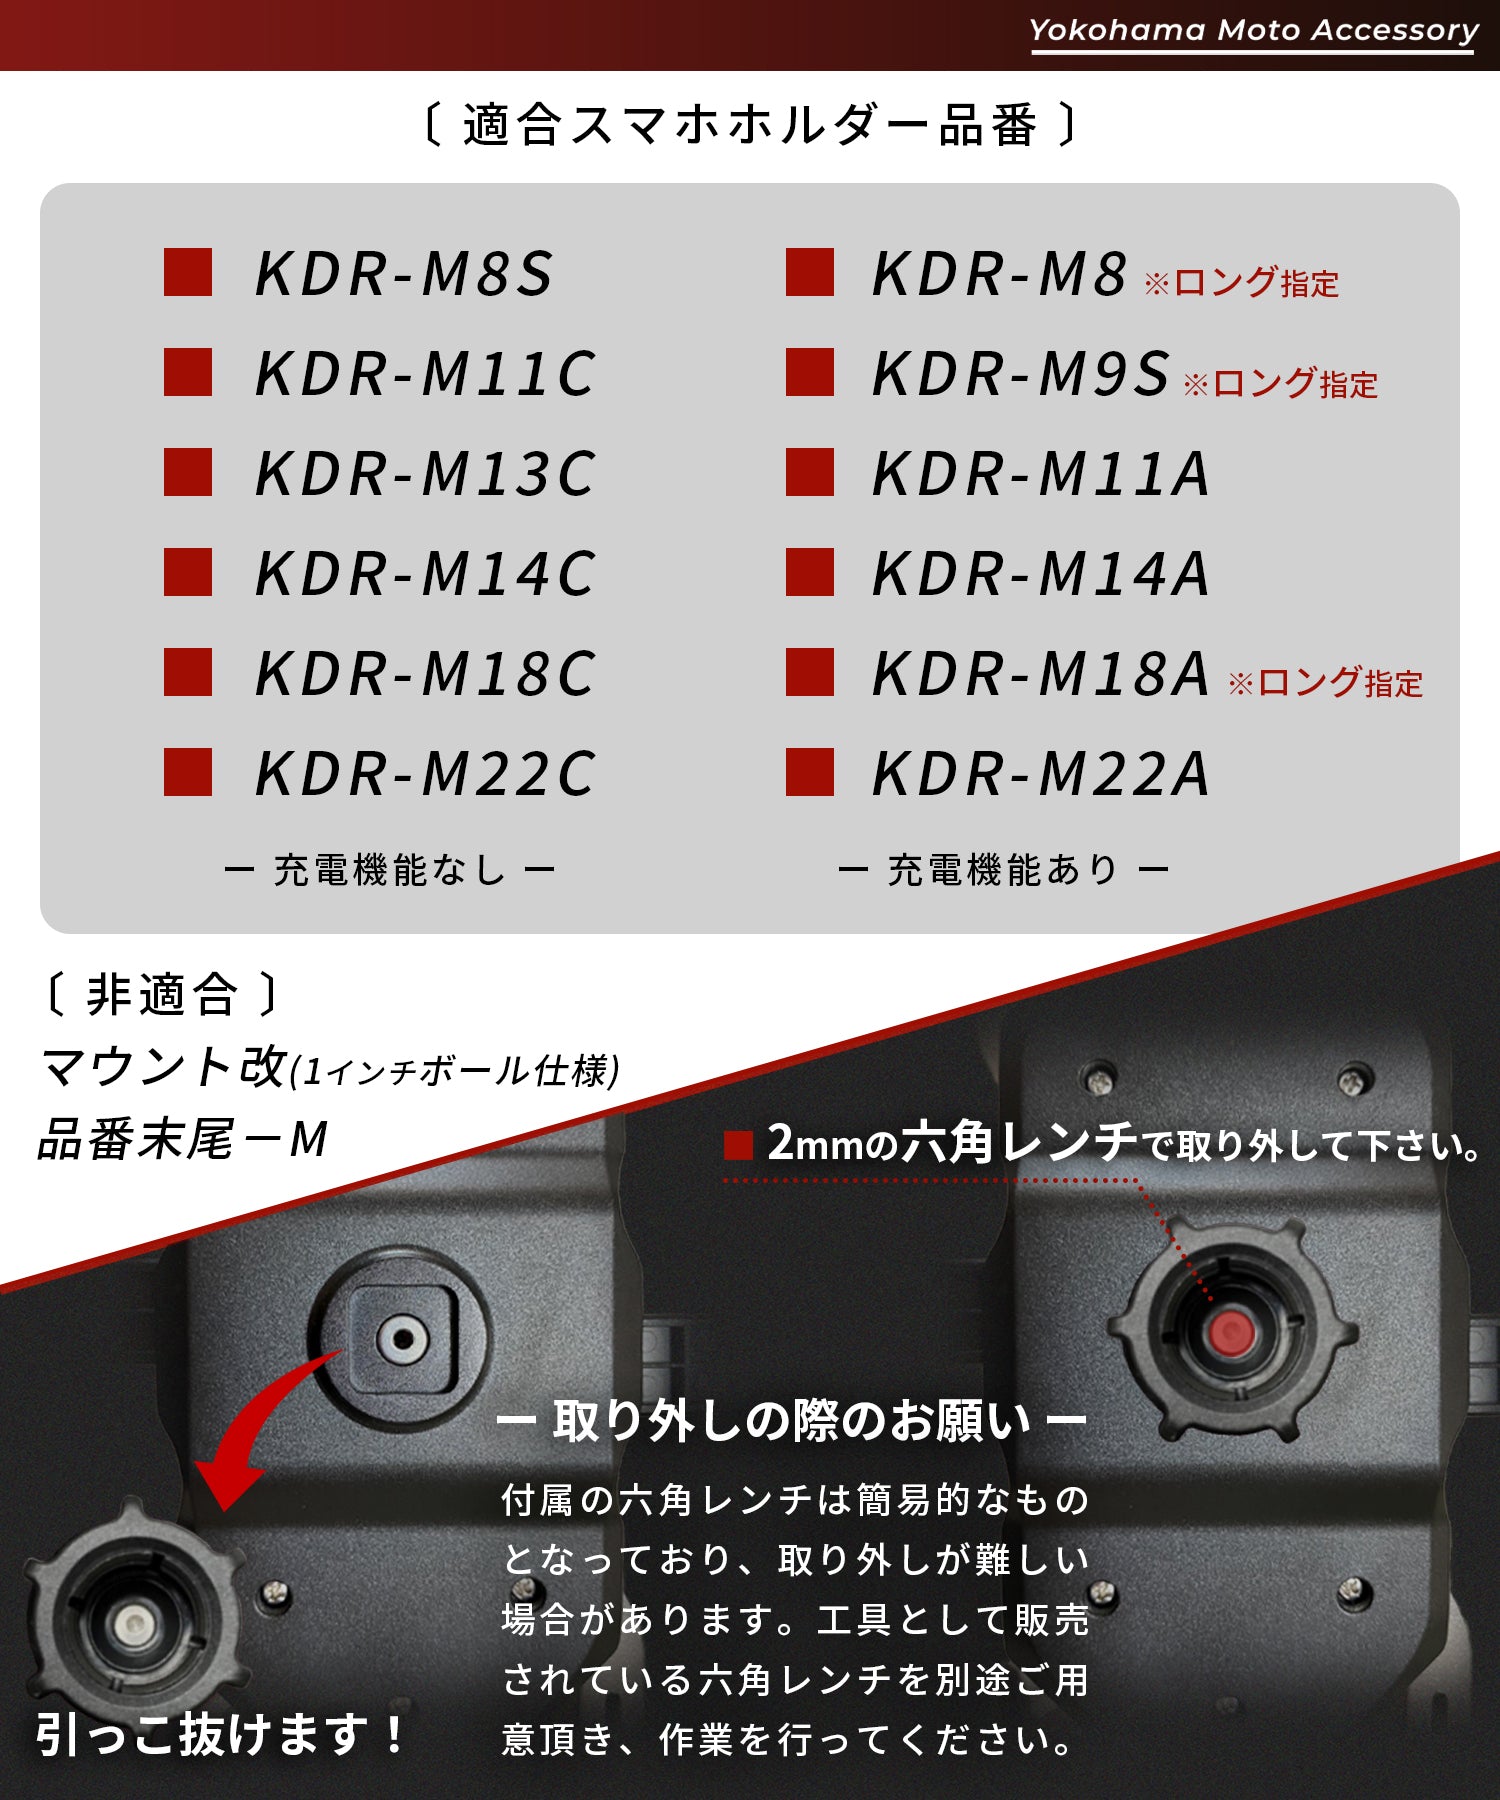  KDR-M22C カエディア Kaedear バイク用スマホホルダー クイックホールド手裏剣 黒 JP店